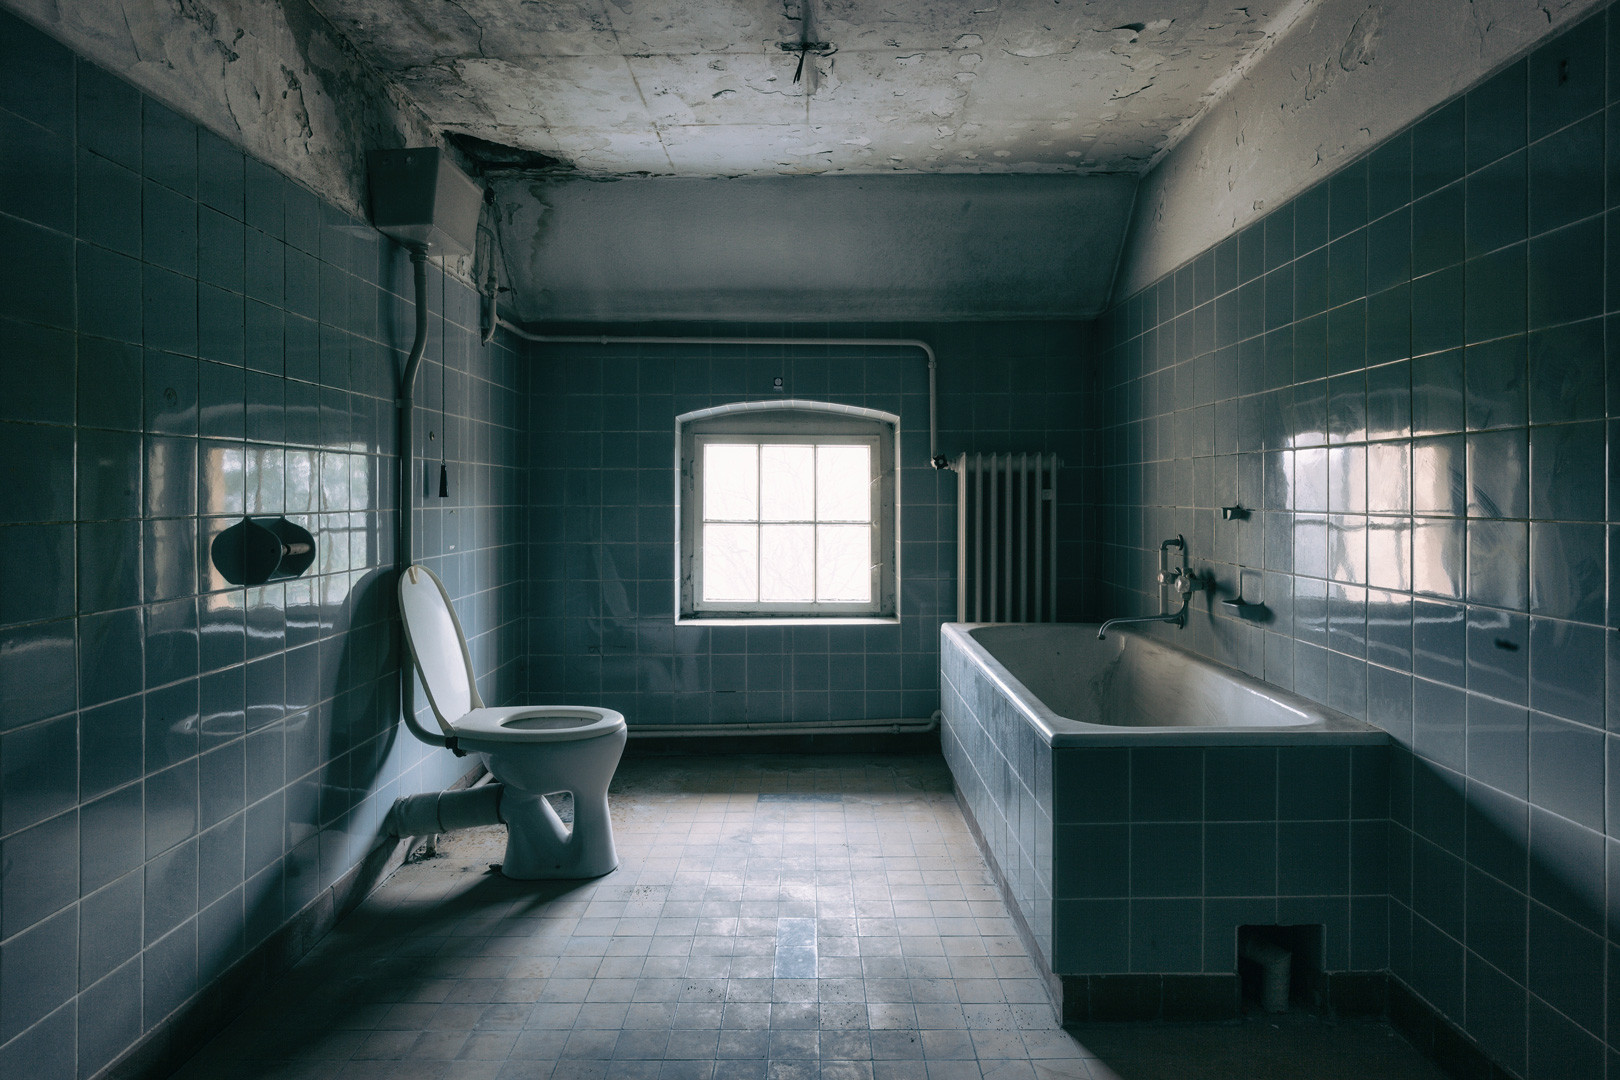 废弃的浴室 德国摄影师,生物学家 ralph graef